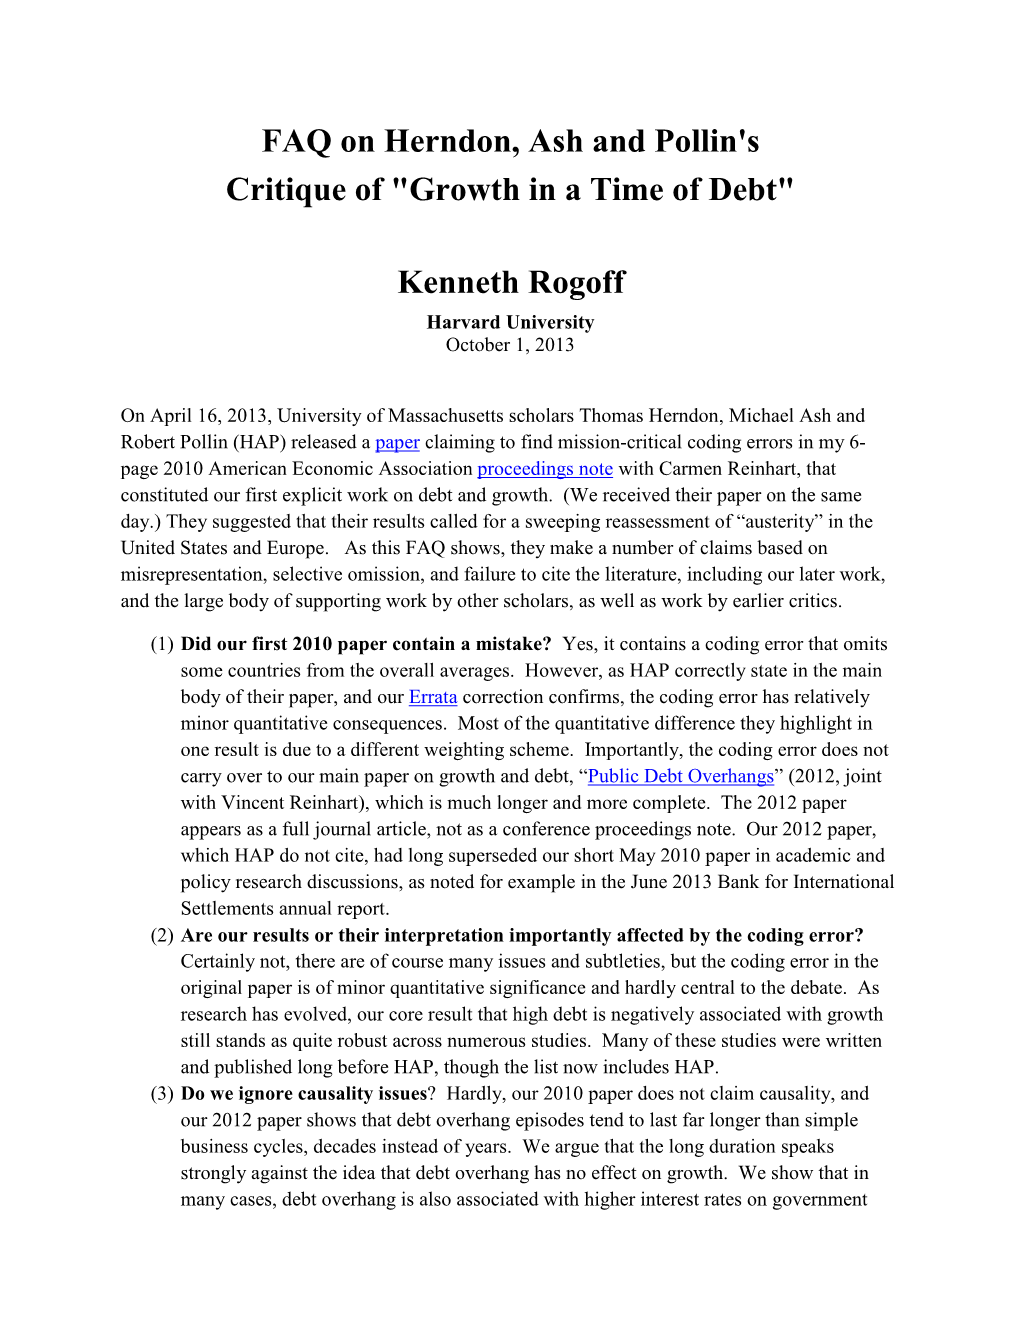 Kenneth Rogoff Harvard University October 1, 2013